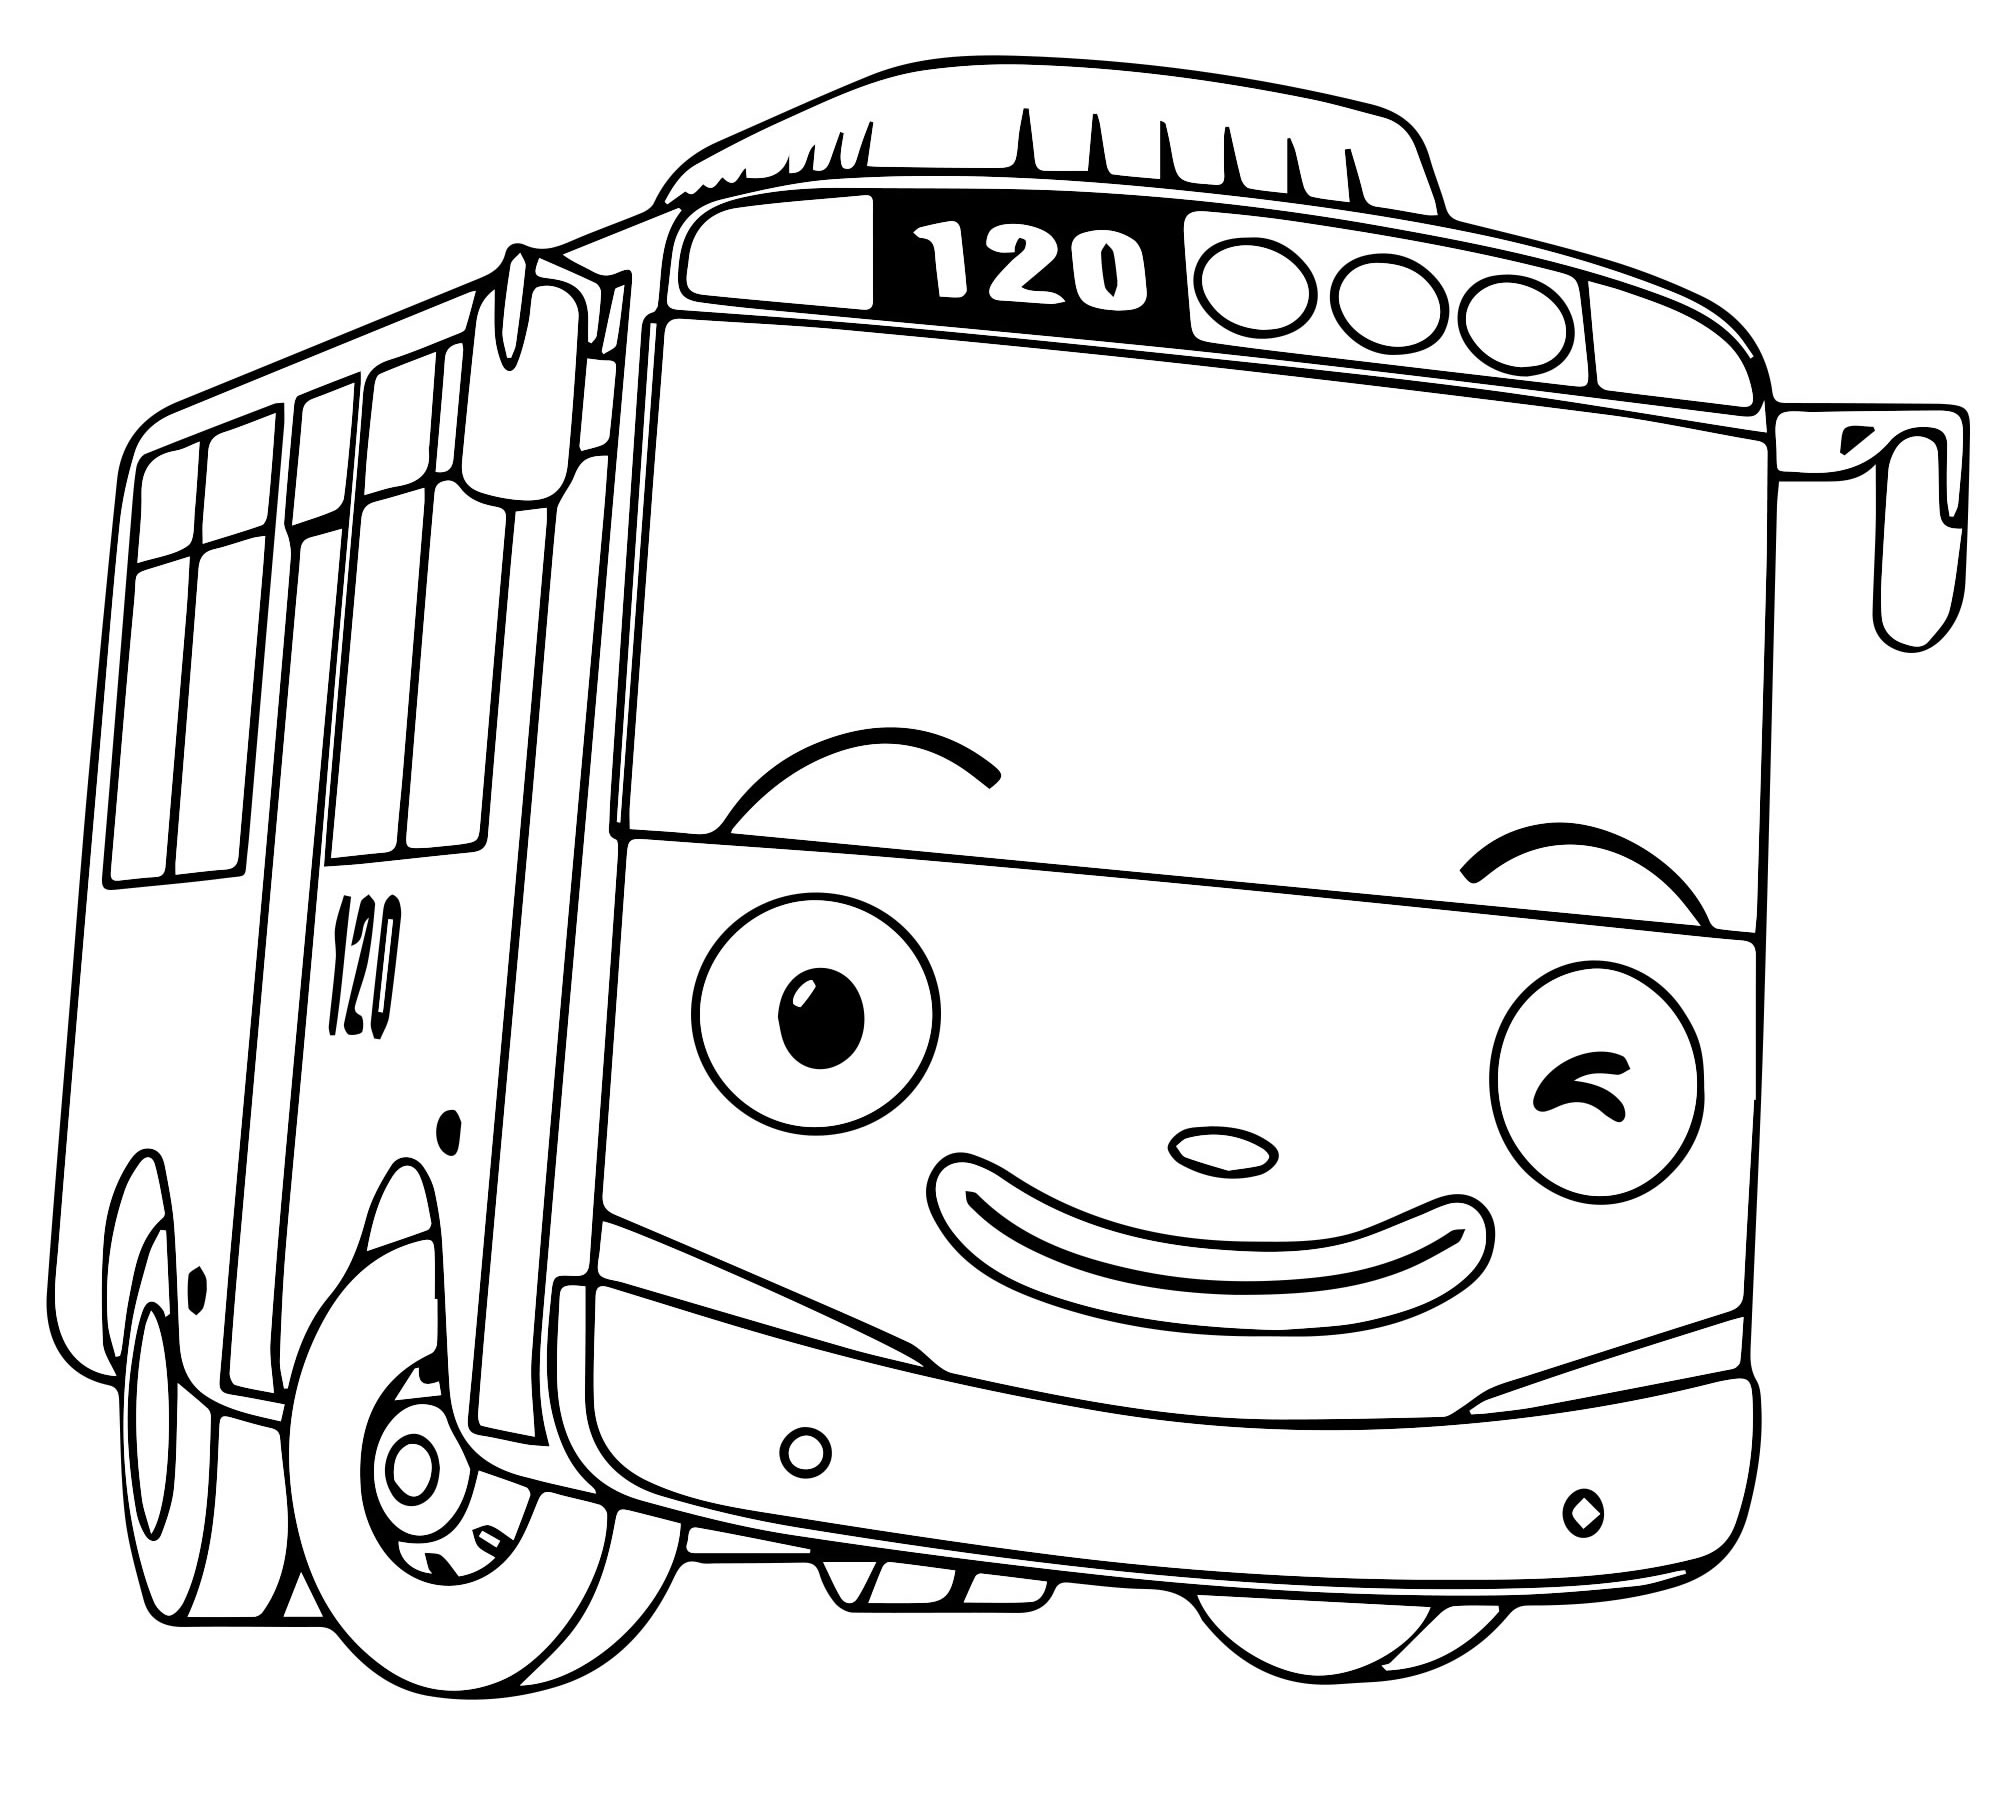 Раскраска автобус детей. Раскраска автобус для детей 3 4 лет. Картинки раскраски.